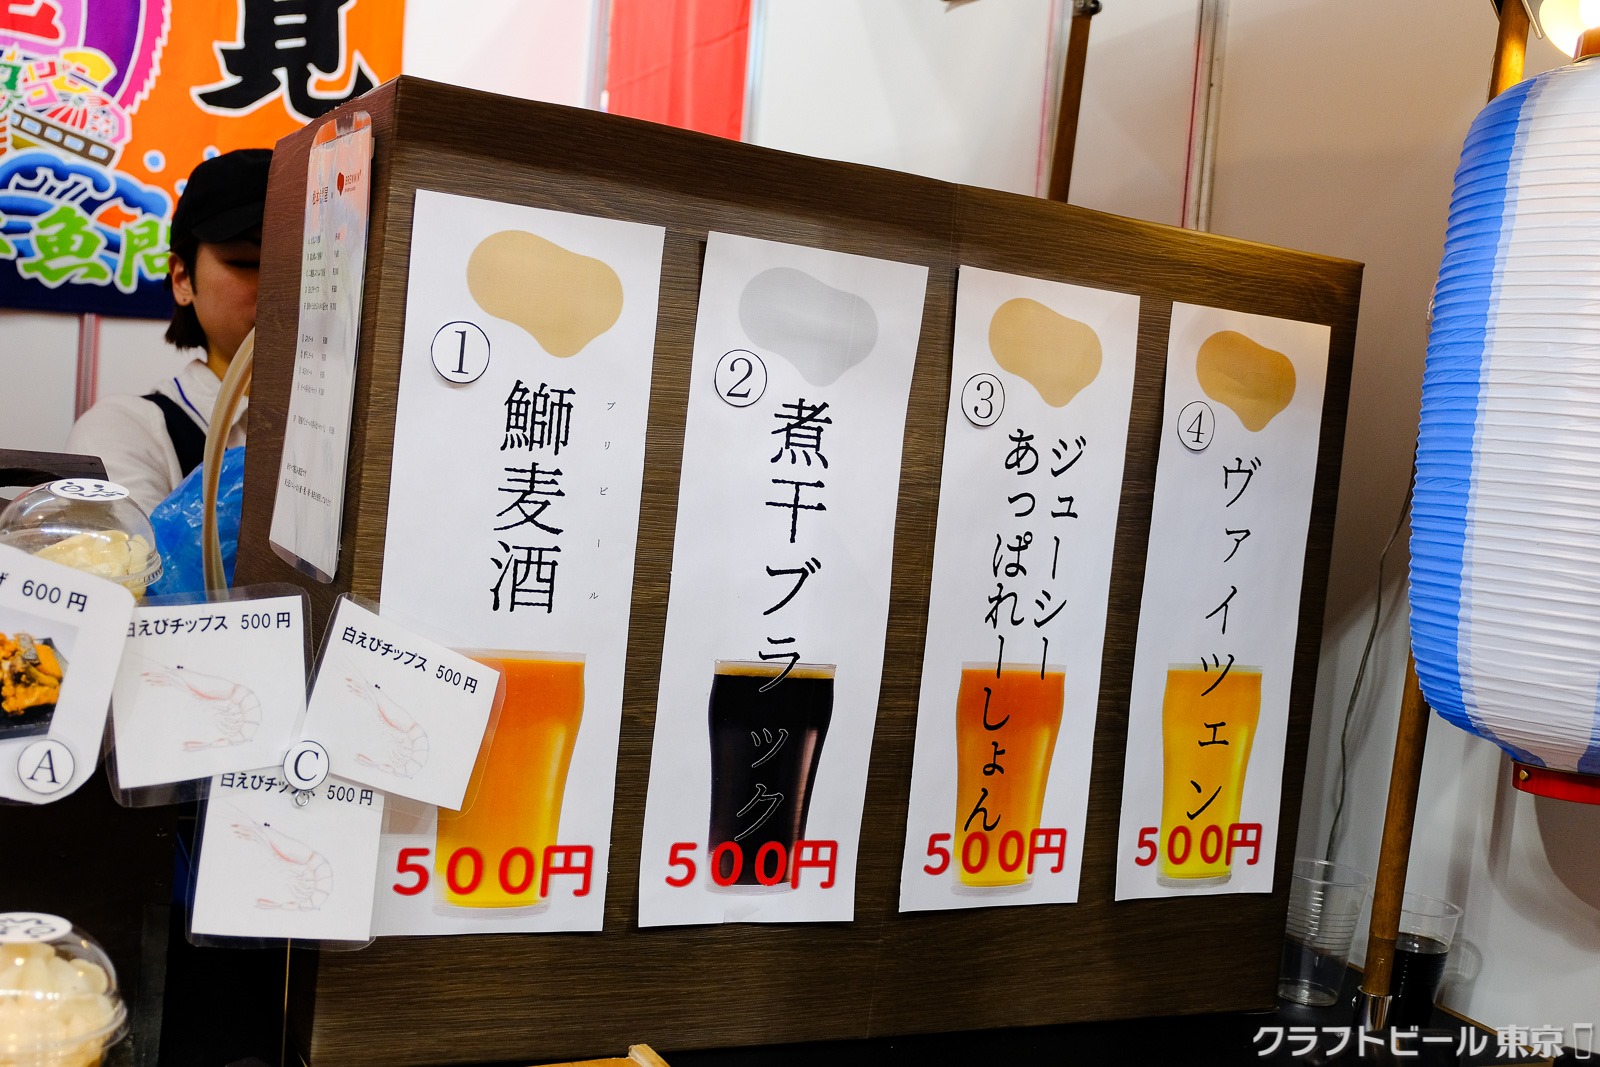 東京 ドーム アルコール 販売